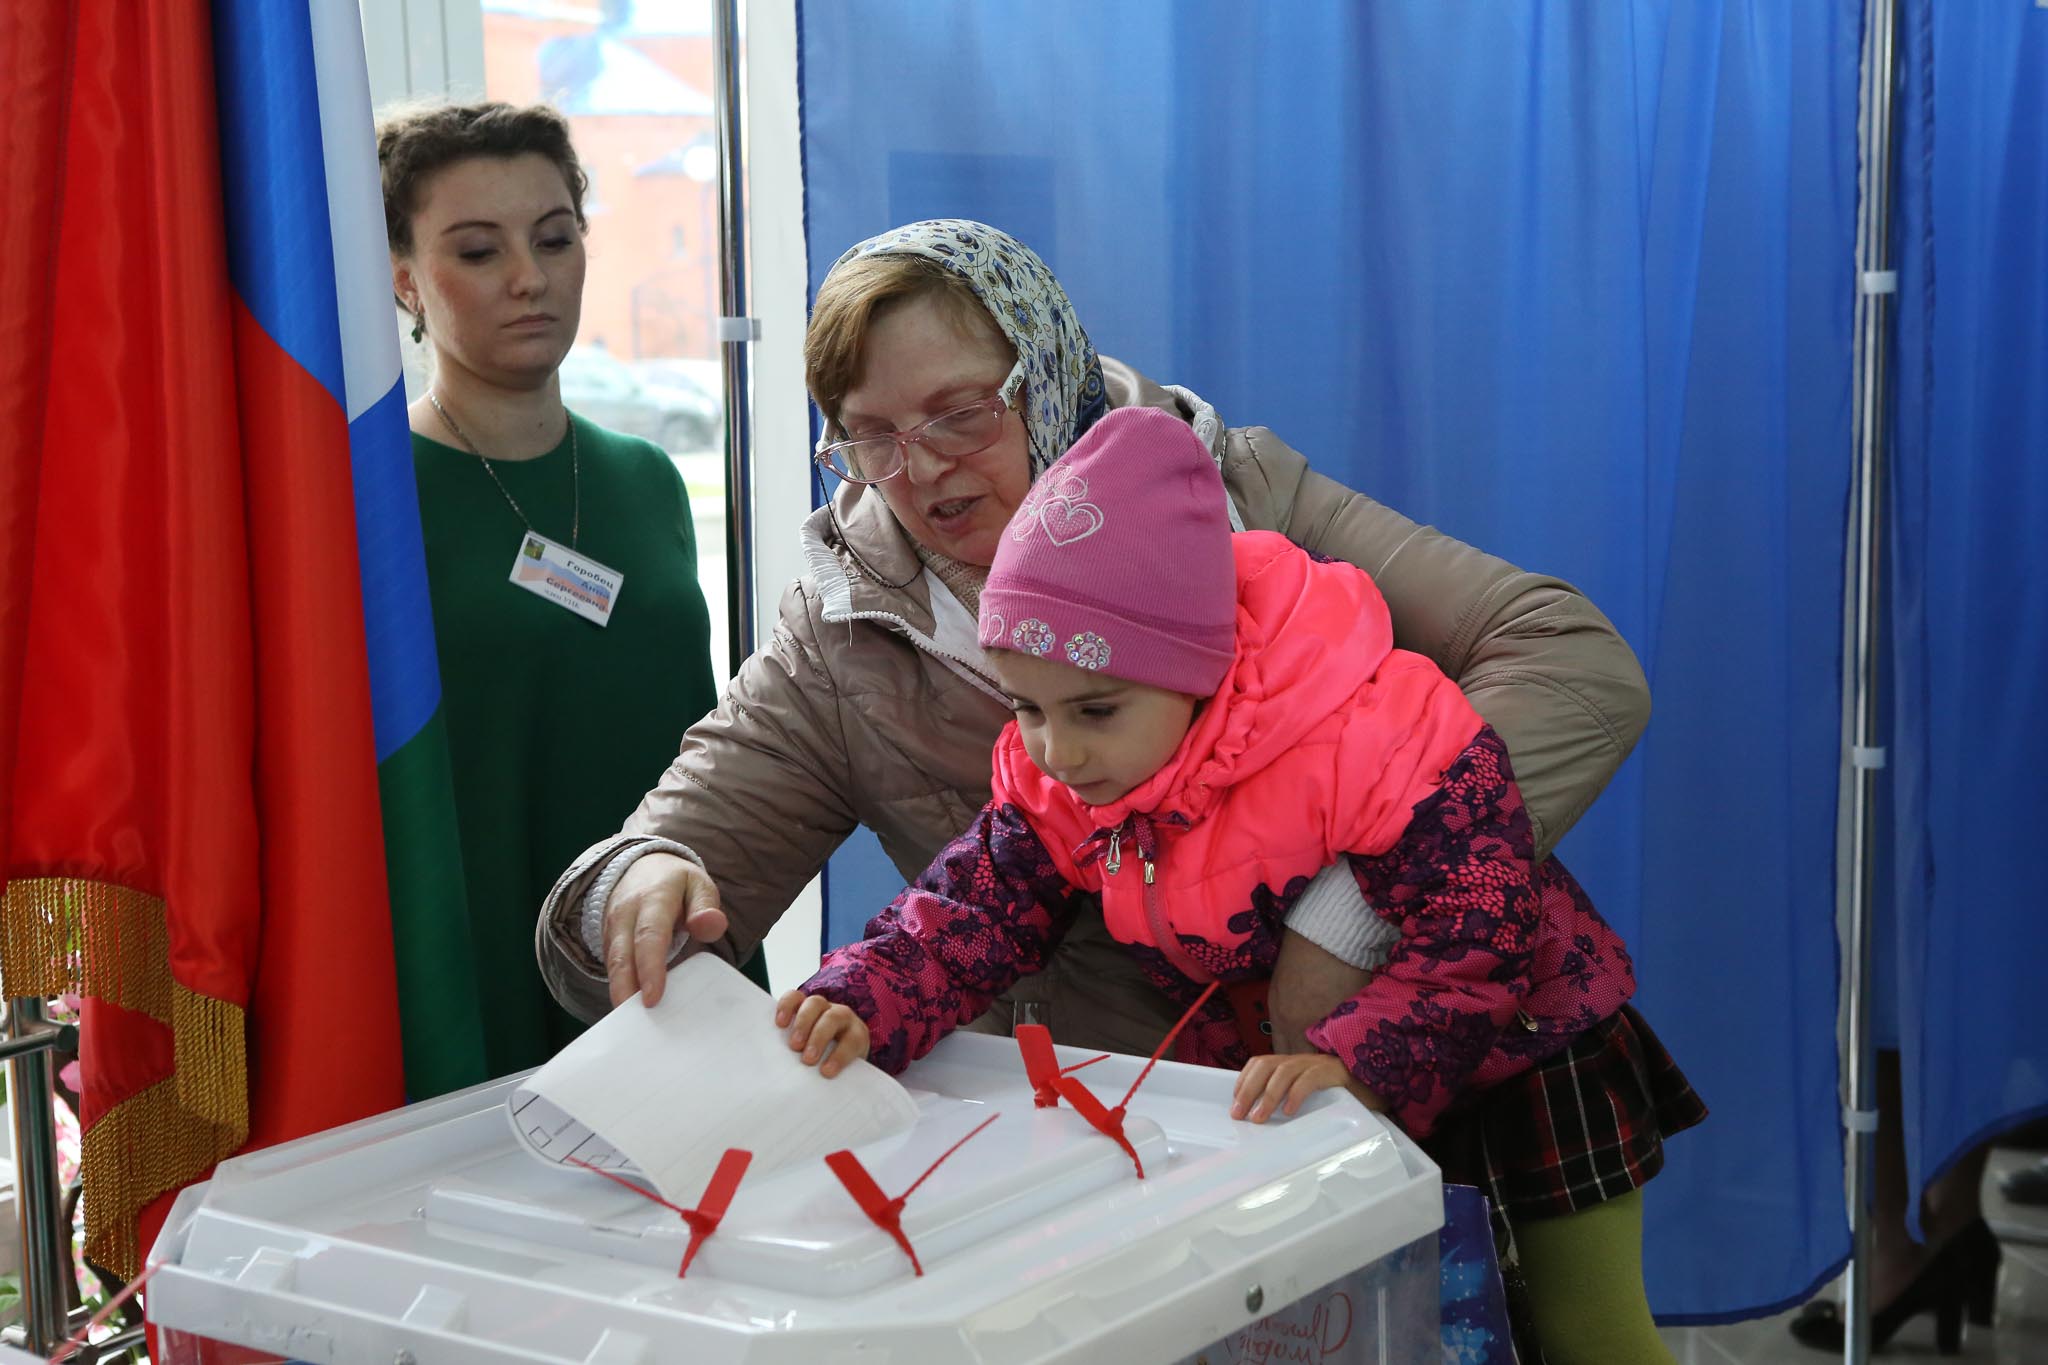 Ивлиева пришли на выборах. Прийти на выборы 17 в 12 часов